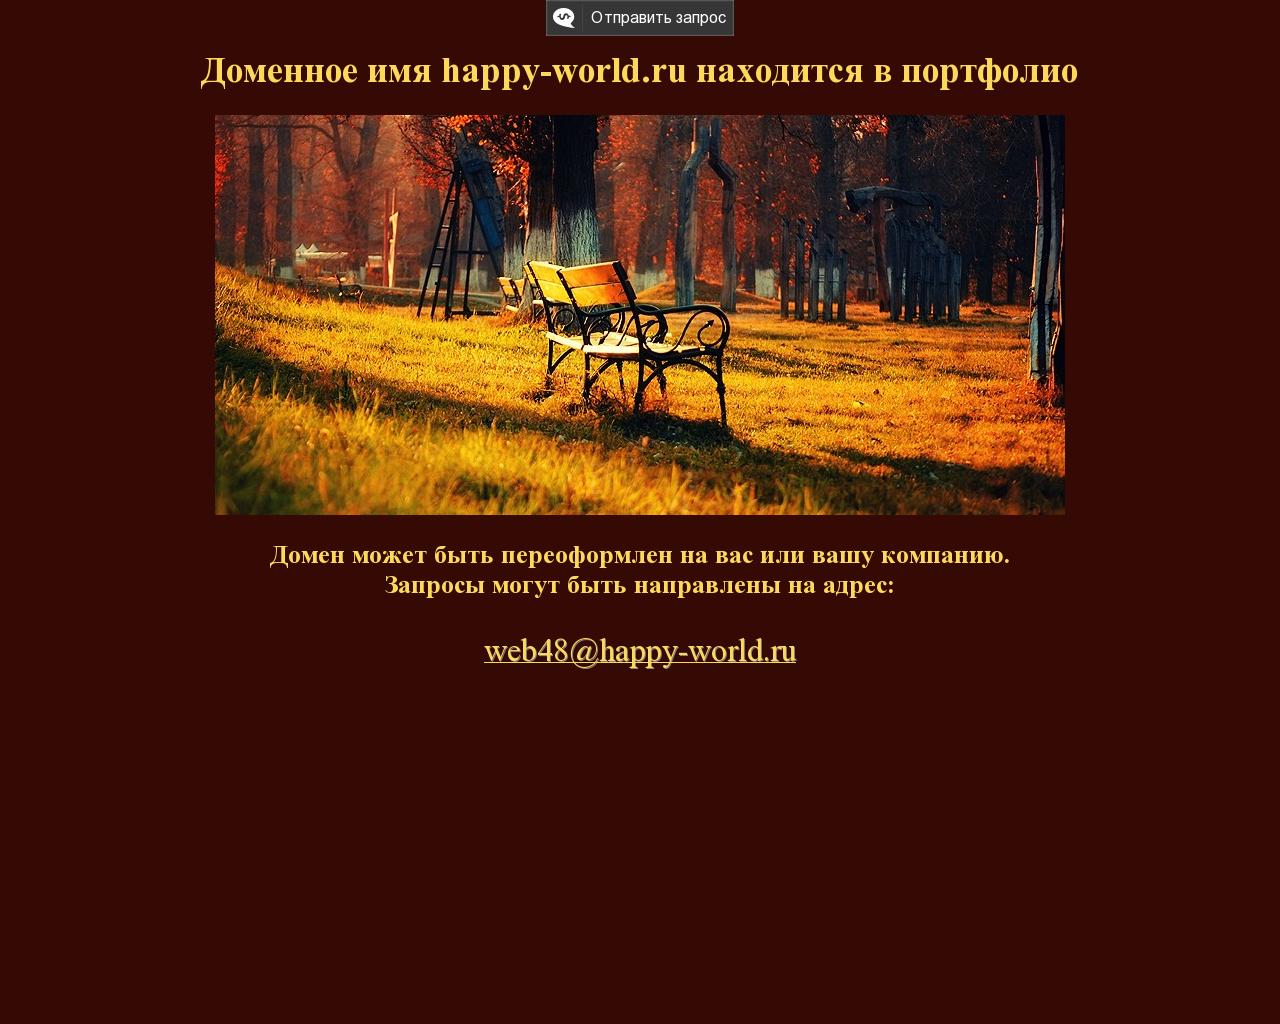 Изображение сайта happy-world.ru в разрешении 1280x1024